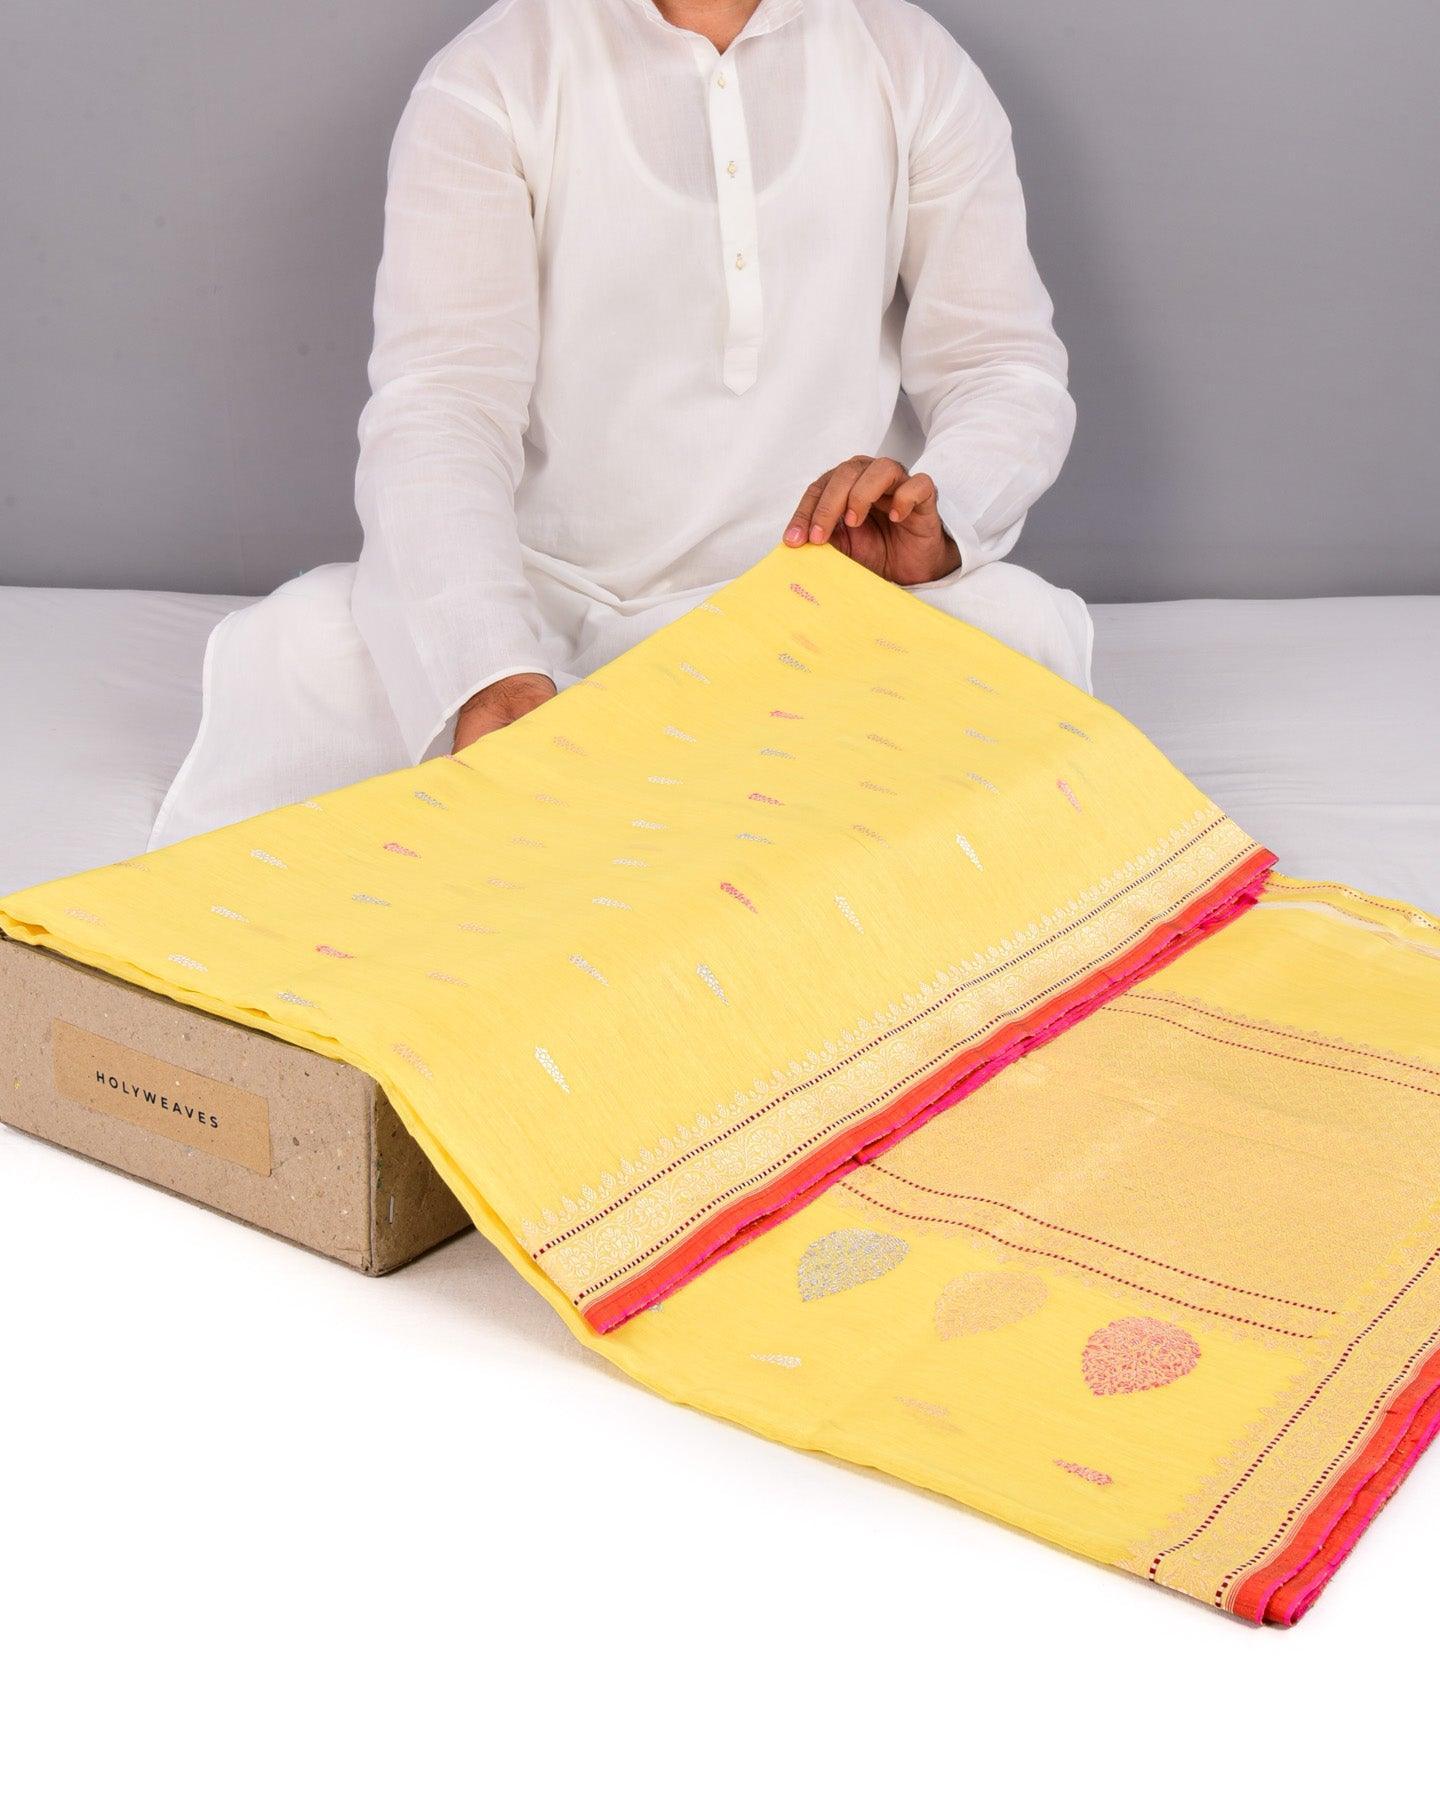 Yellow Banarasi Colored Zari Buti Kadhuan Brocade Handwoven Linen Silk Saree - By HolyWeaves, Benares